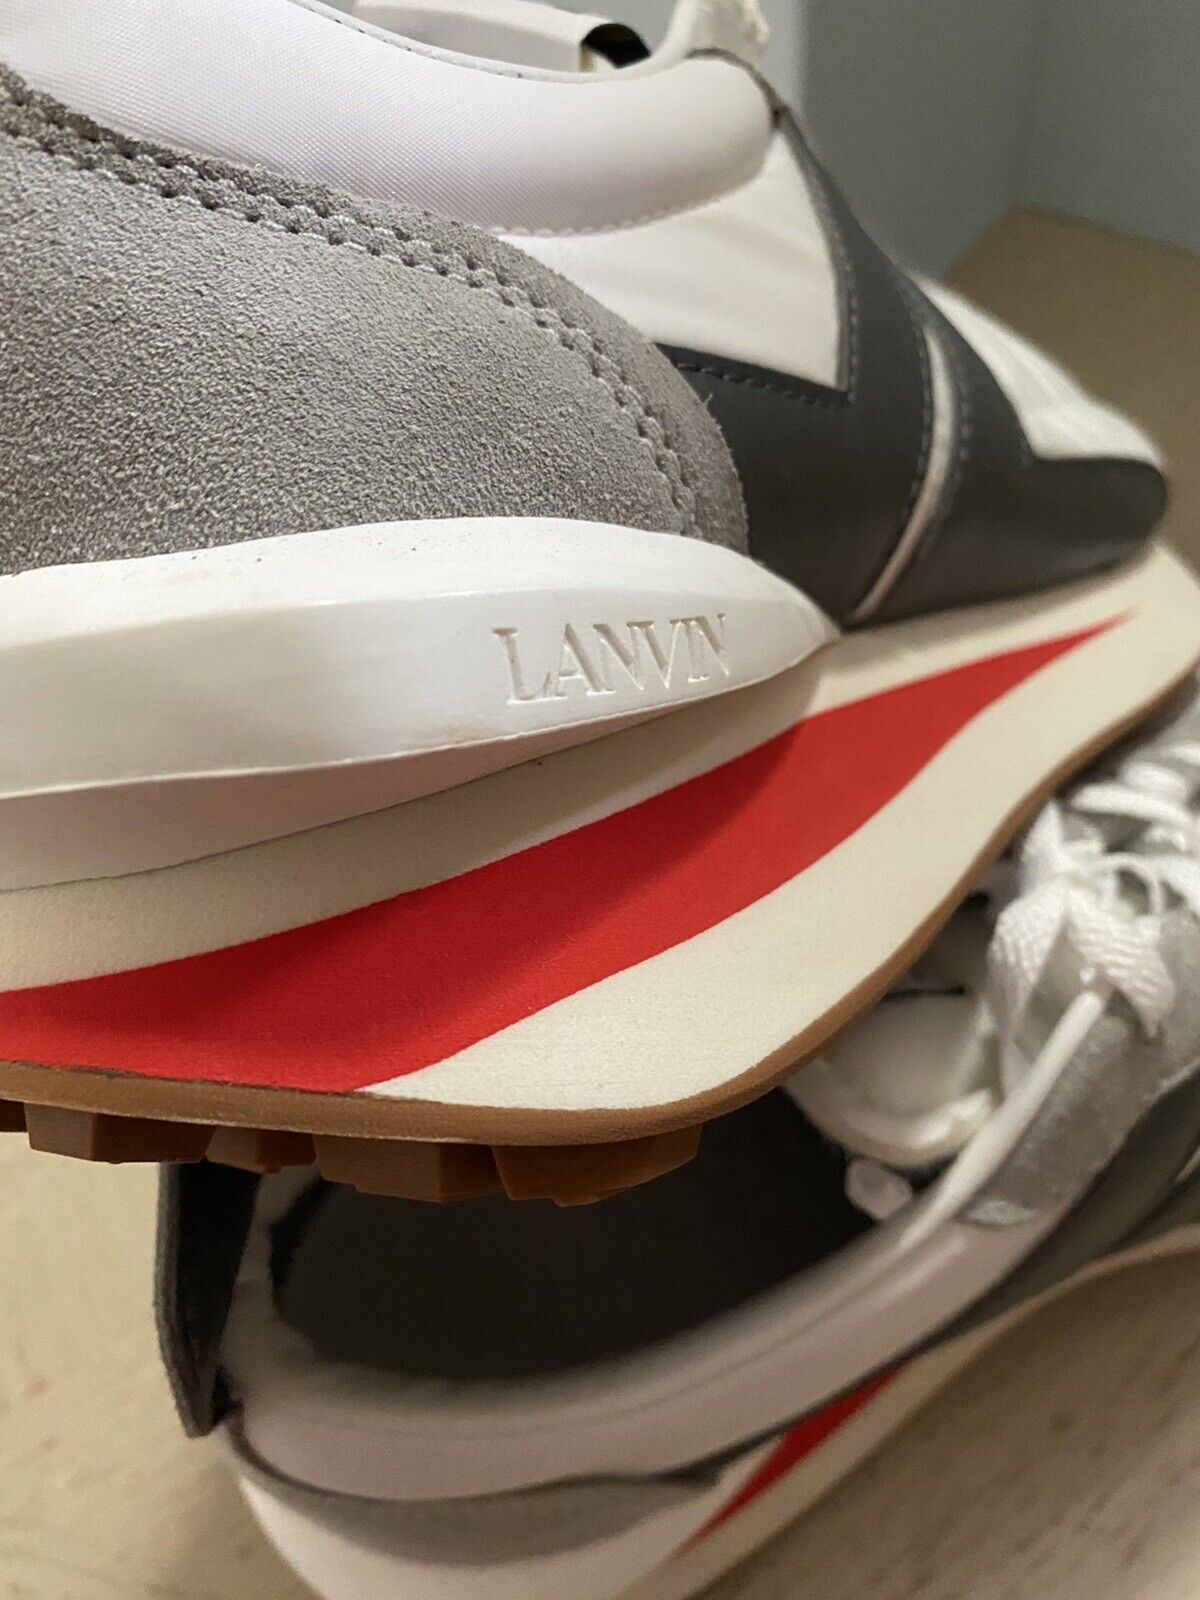 Новые мужские кроссовки Lanvin из нейлона/замши BumpR белого/серого цвета 13 US/46 EU